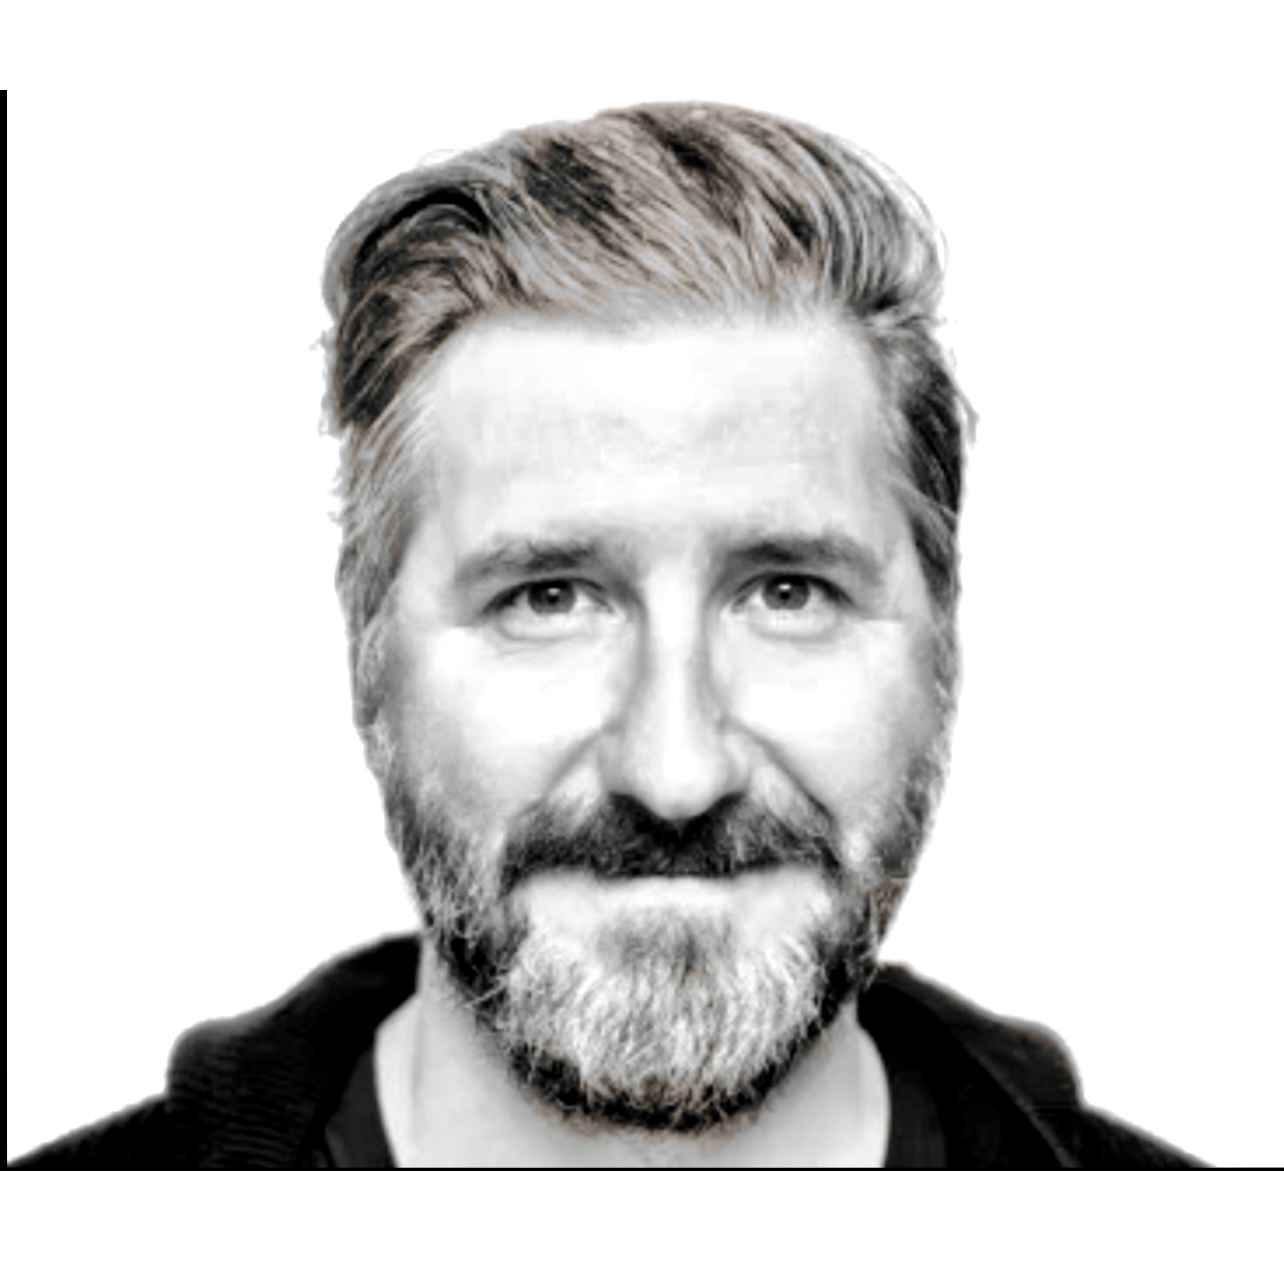 Une photo en noir et blanc d'un homme barbu.